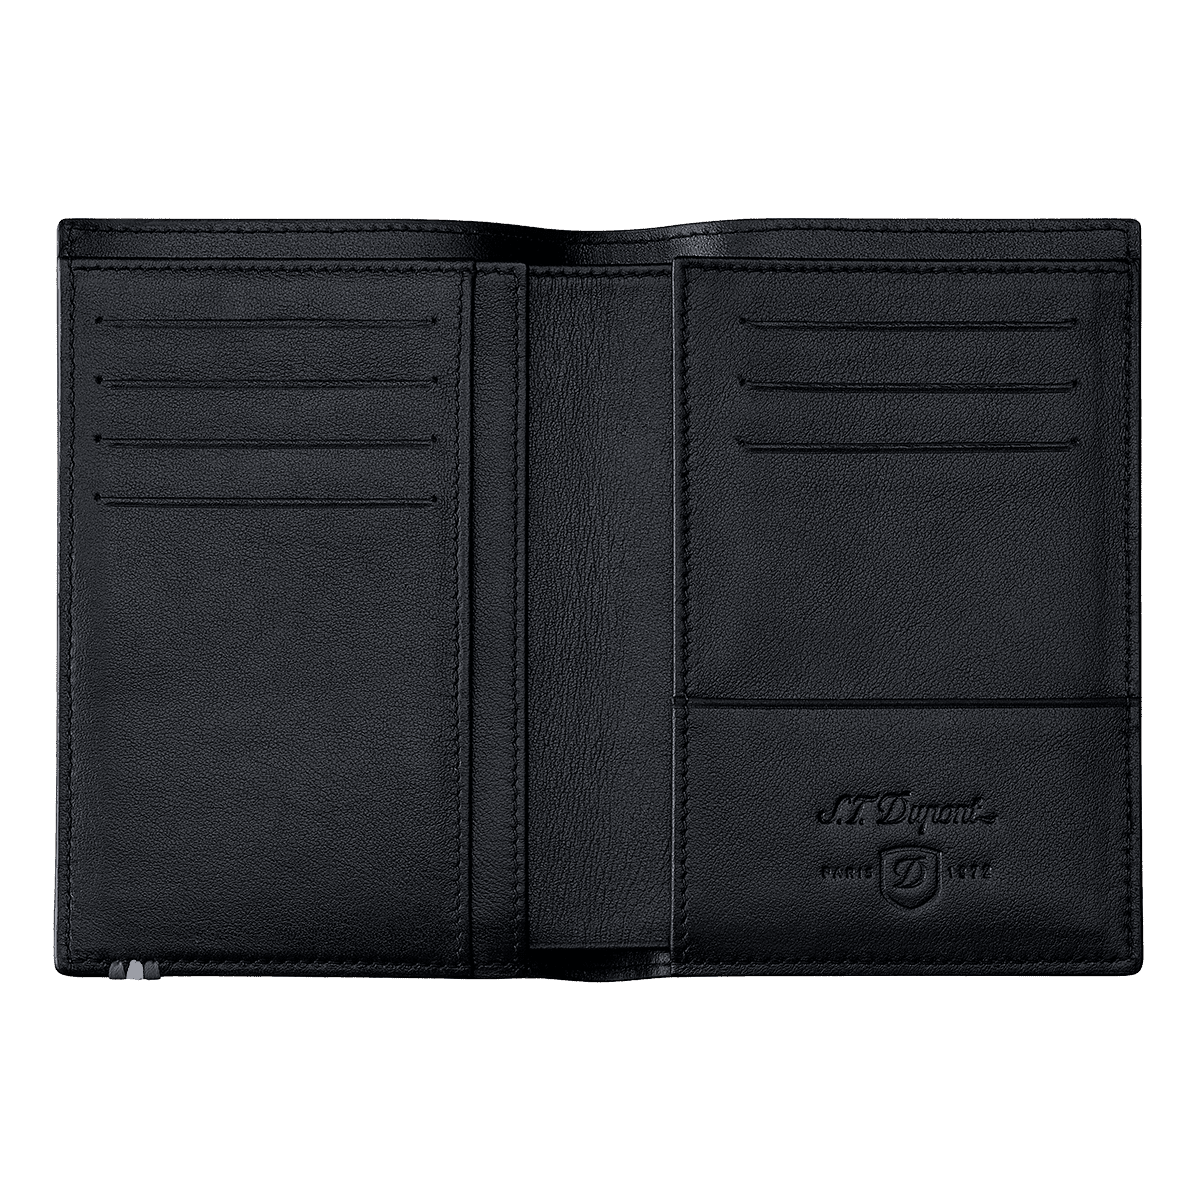 Портмоне Line D 180347 Цвет Чёрный Кожа Contraste, семь отделений для кредитных карт | S.T. Dupont